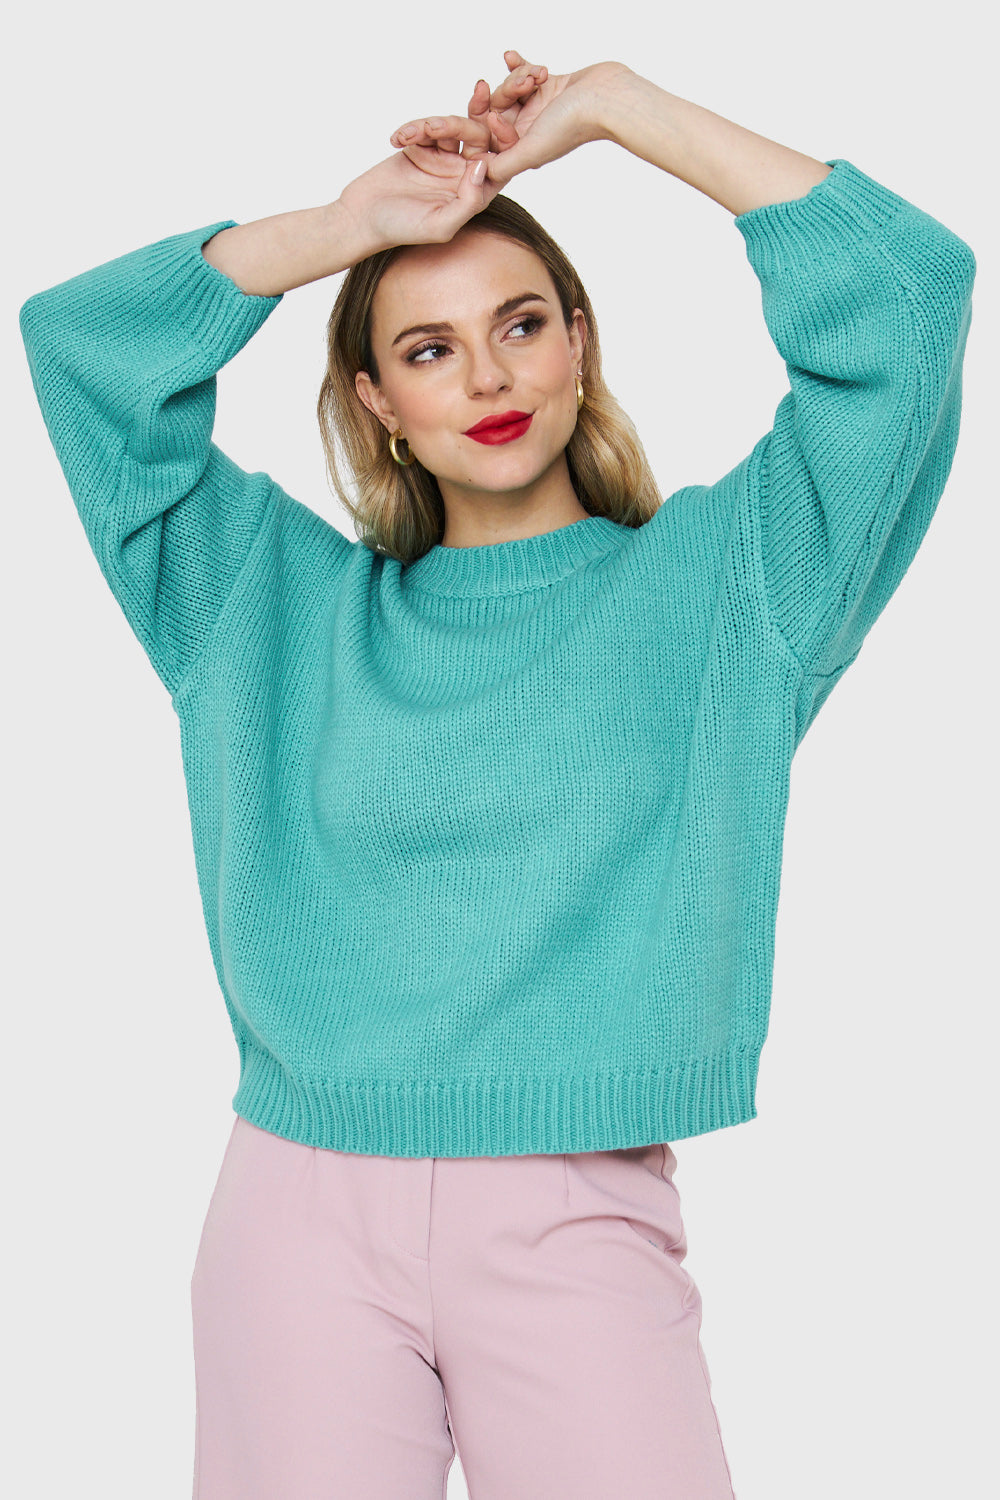 Sweater Básico Holgado Turquesa